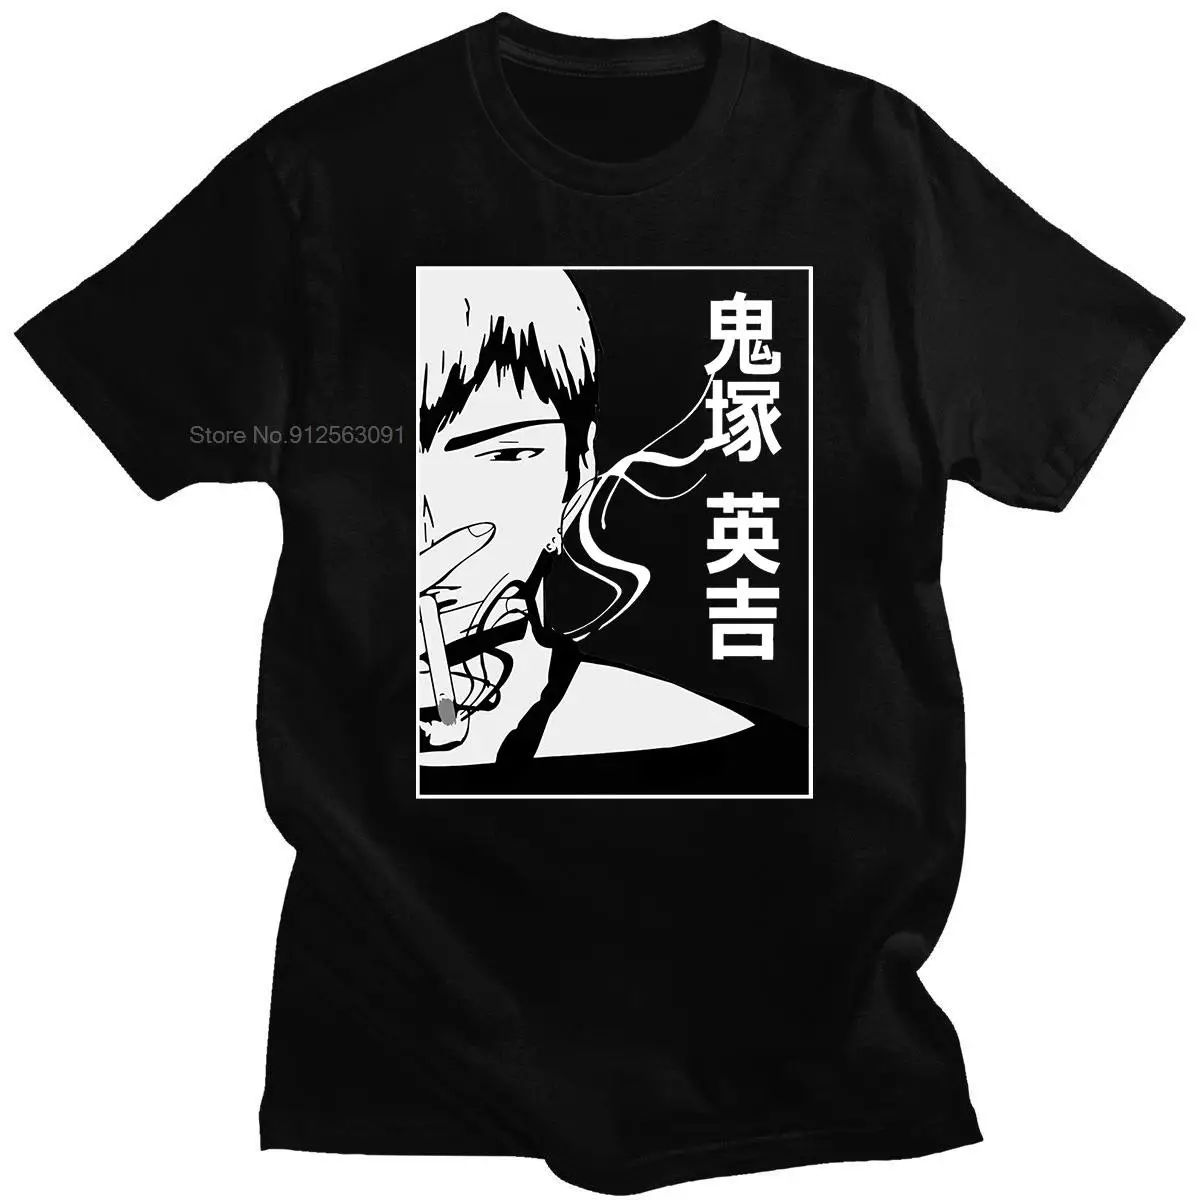 Tanio Gorąca sprzedaż koszulki świetny nauczyciel Onizuka Gto sklep